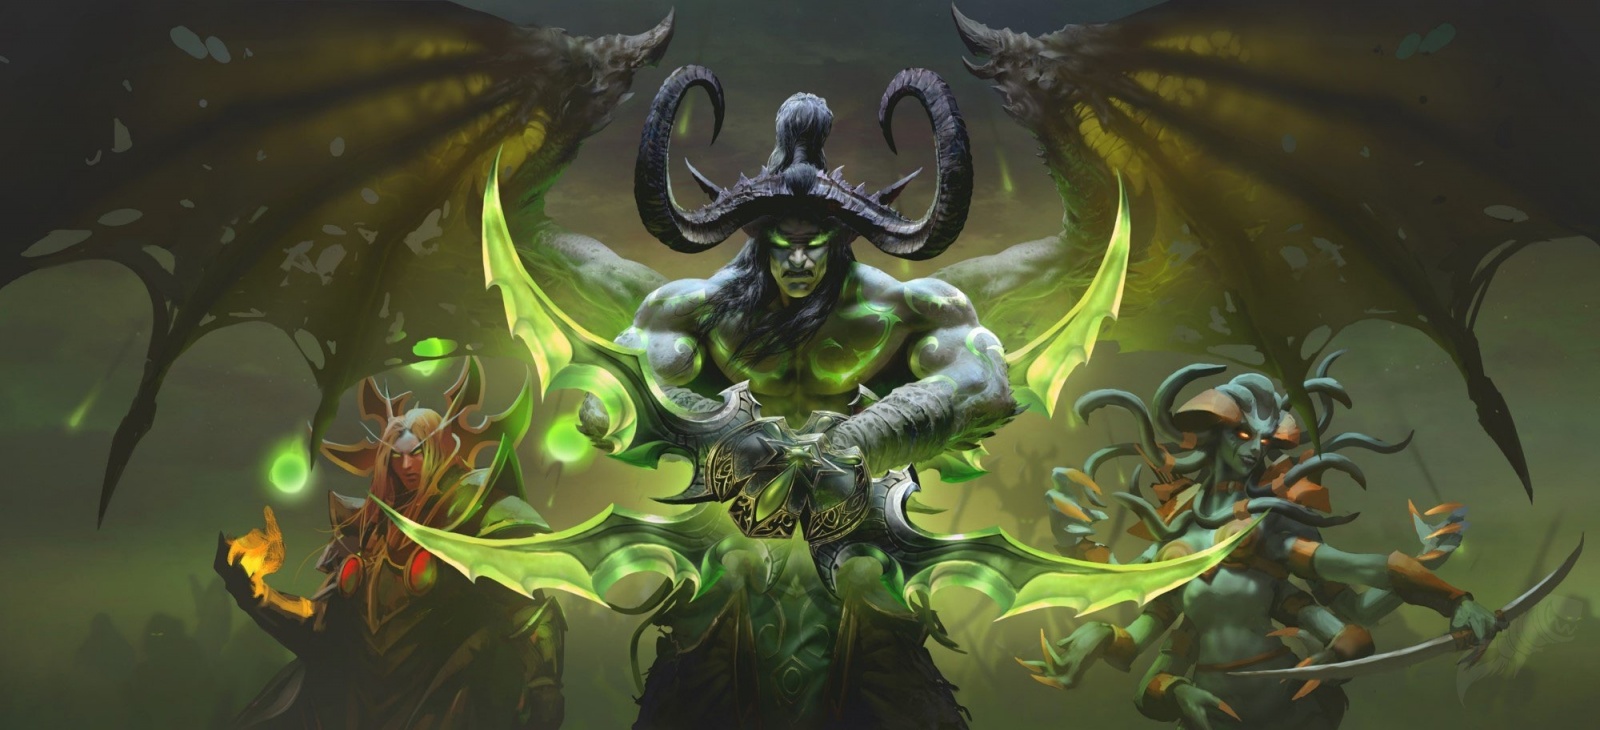 Oude tijden herleven met World of Warcraft: Burning Crusade Classic